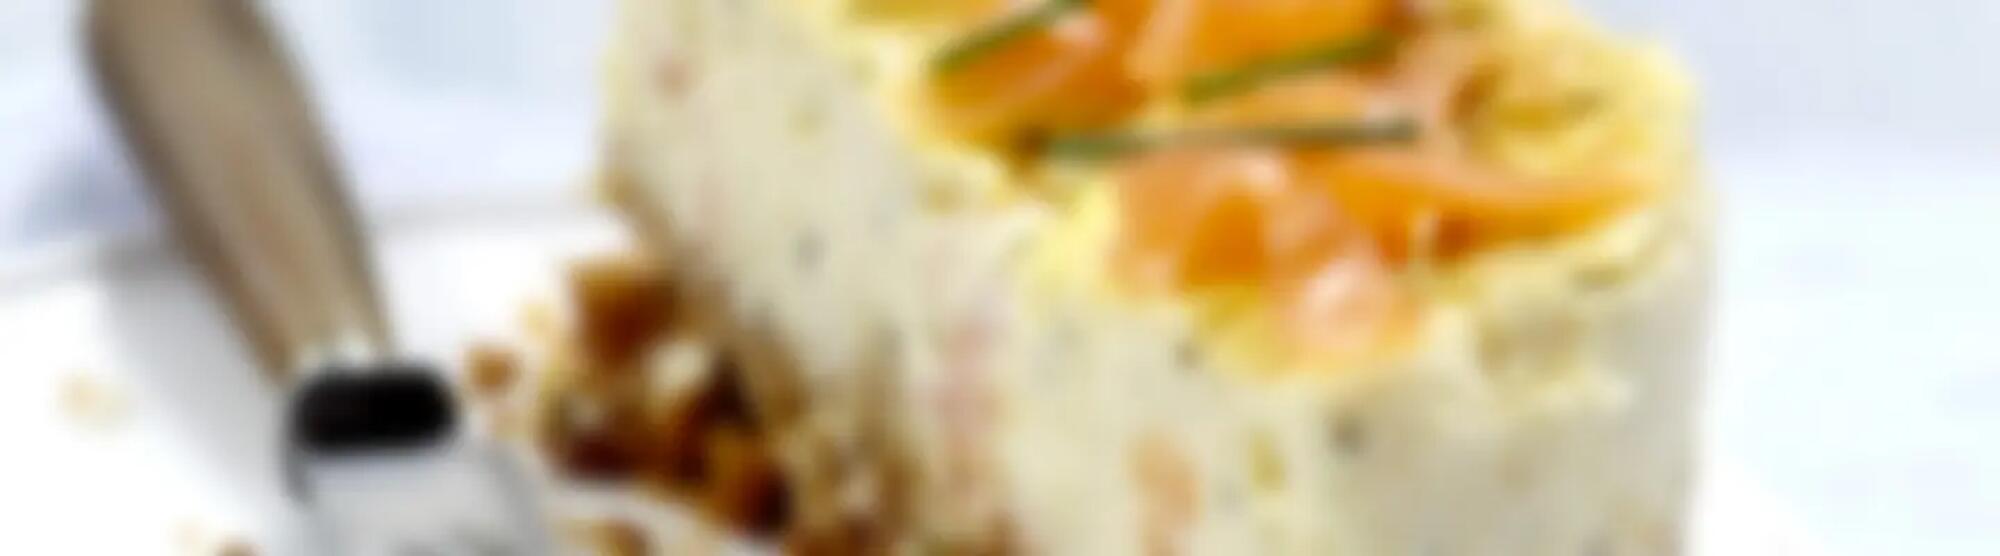 Recette : Cheesecake au saumon fumé et fromage frais